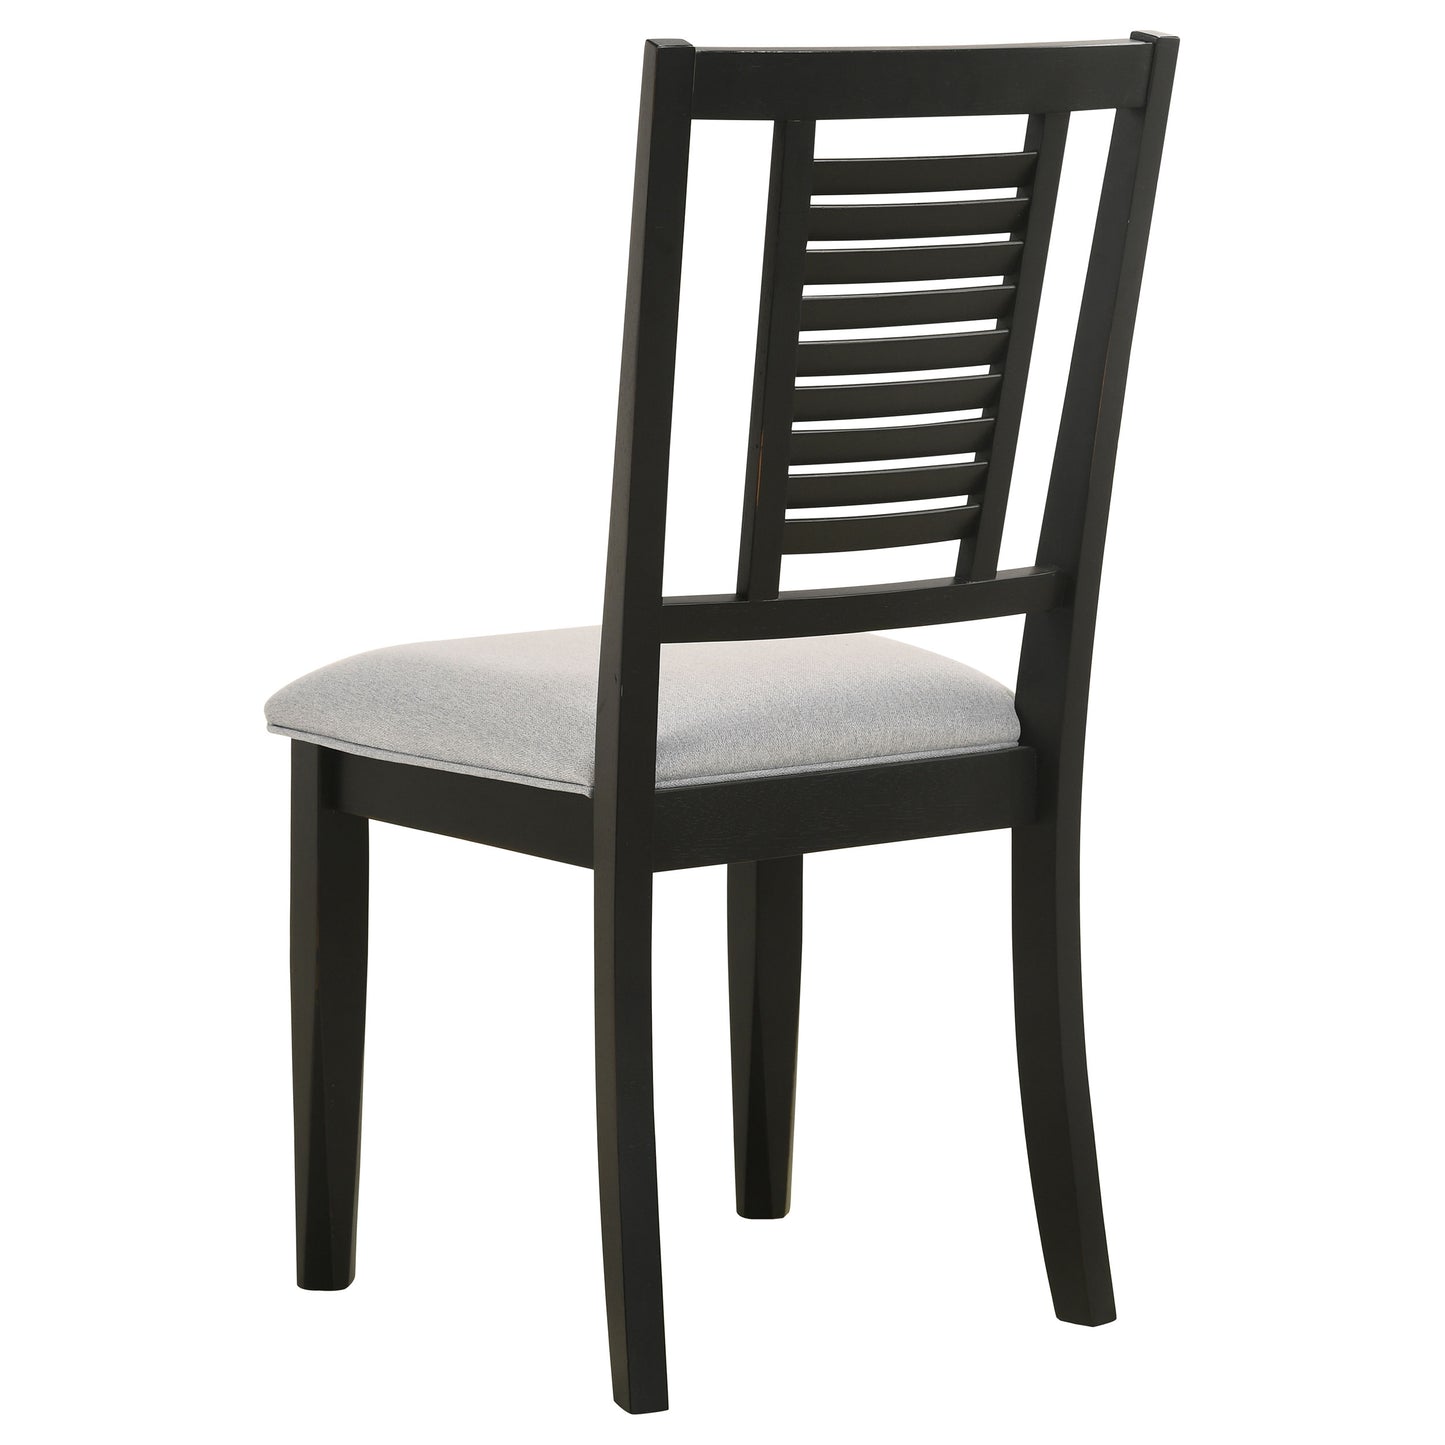 Appleton Ladder Back Dining Side Chair Black Washed and Light Grey (Set of 2)